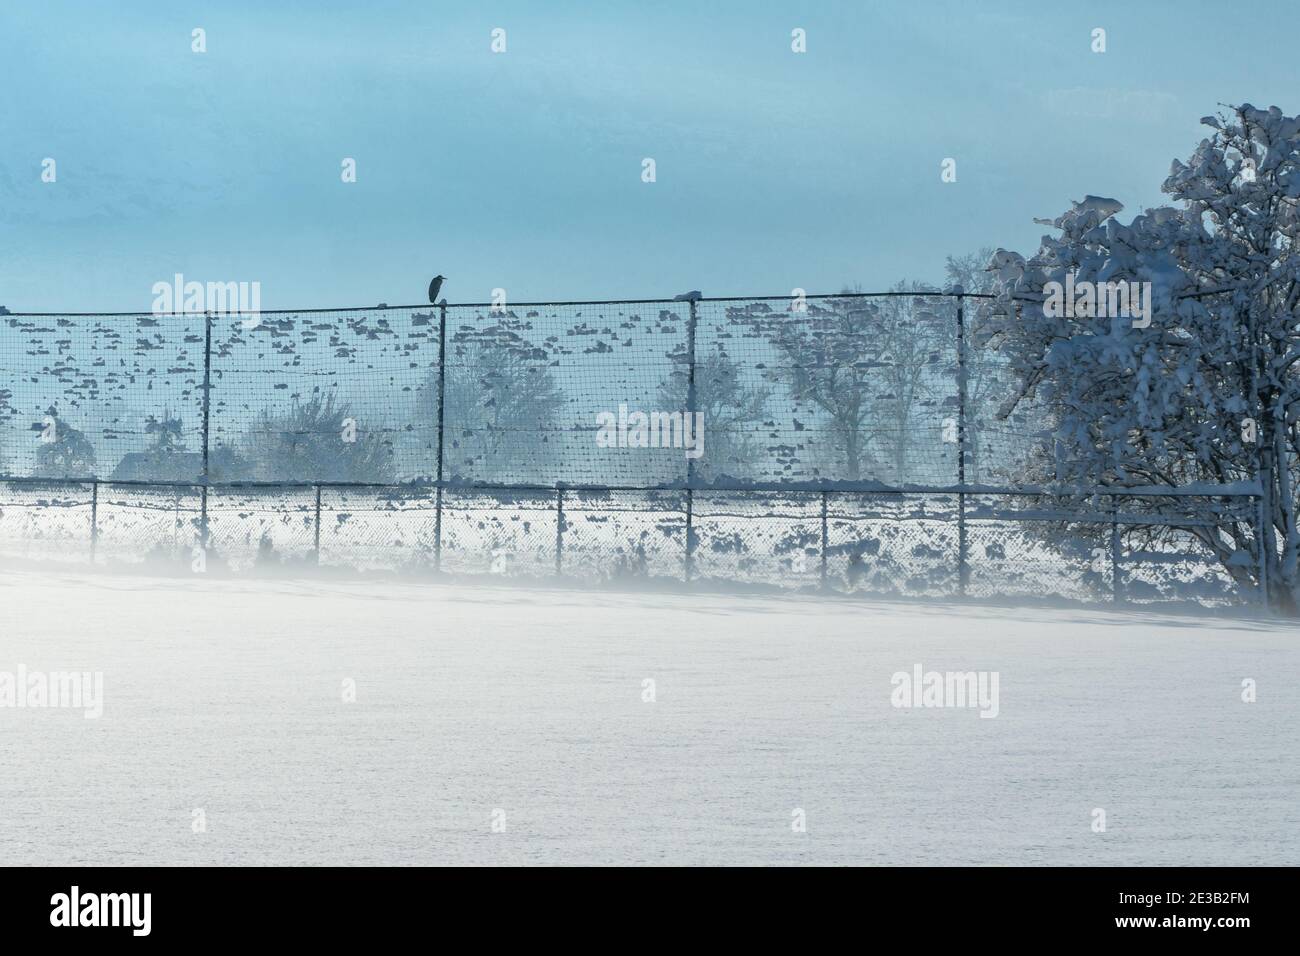 Graureiher im Winter auf dem Ballfangnetz des Fussballplatzes. Gray heron in winter on the ball net of the football field. morning mist. Morgennebel Stock Photo